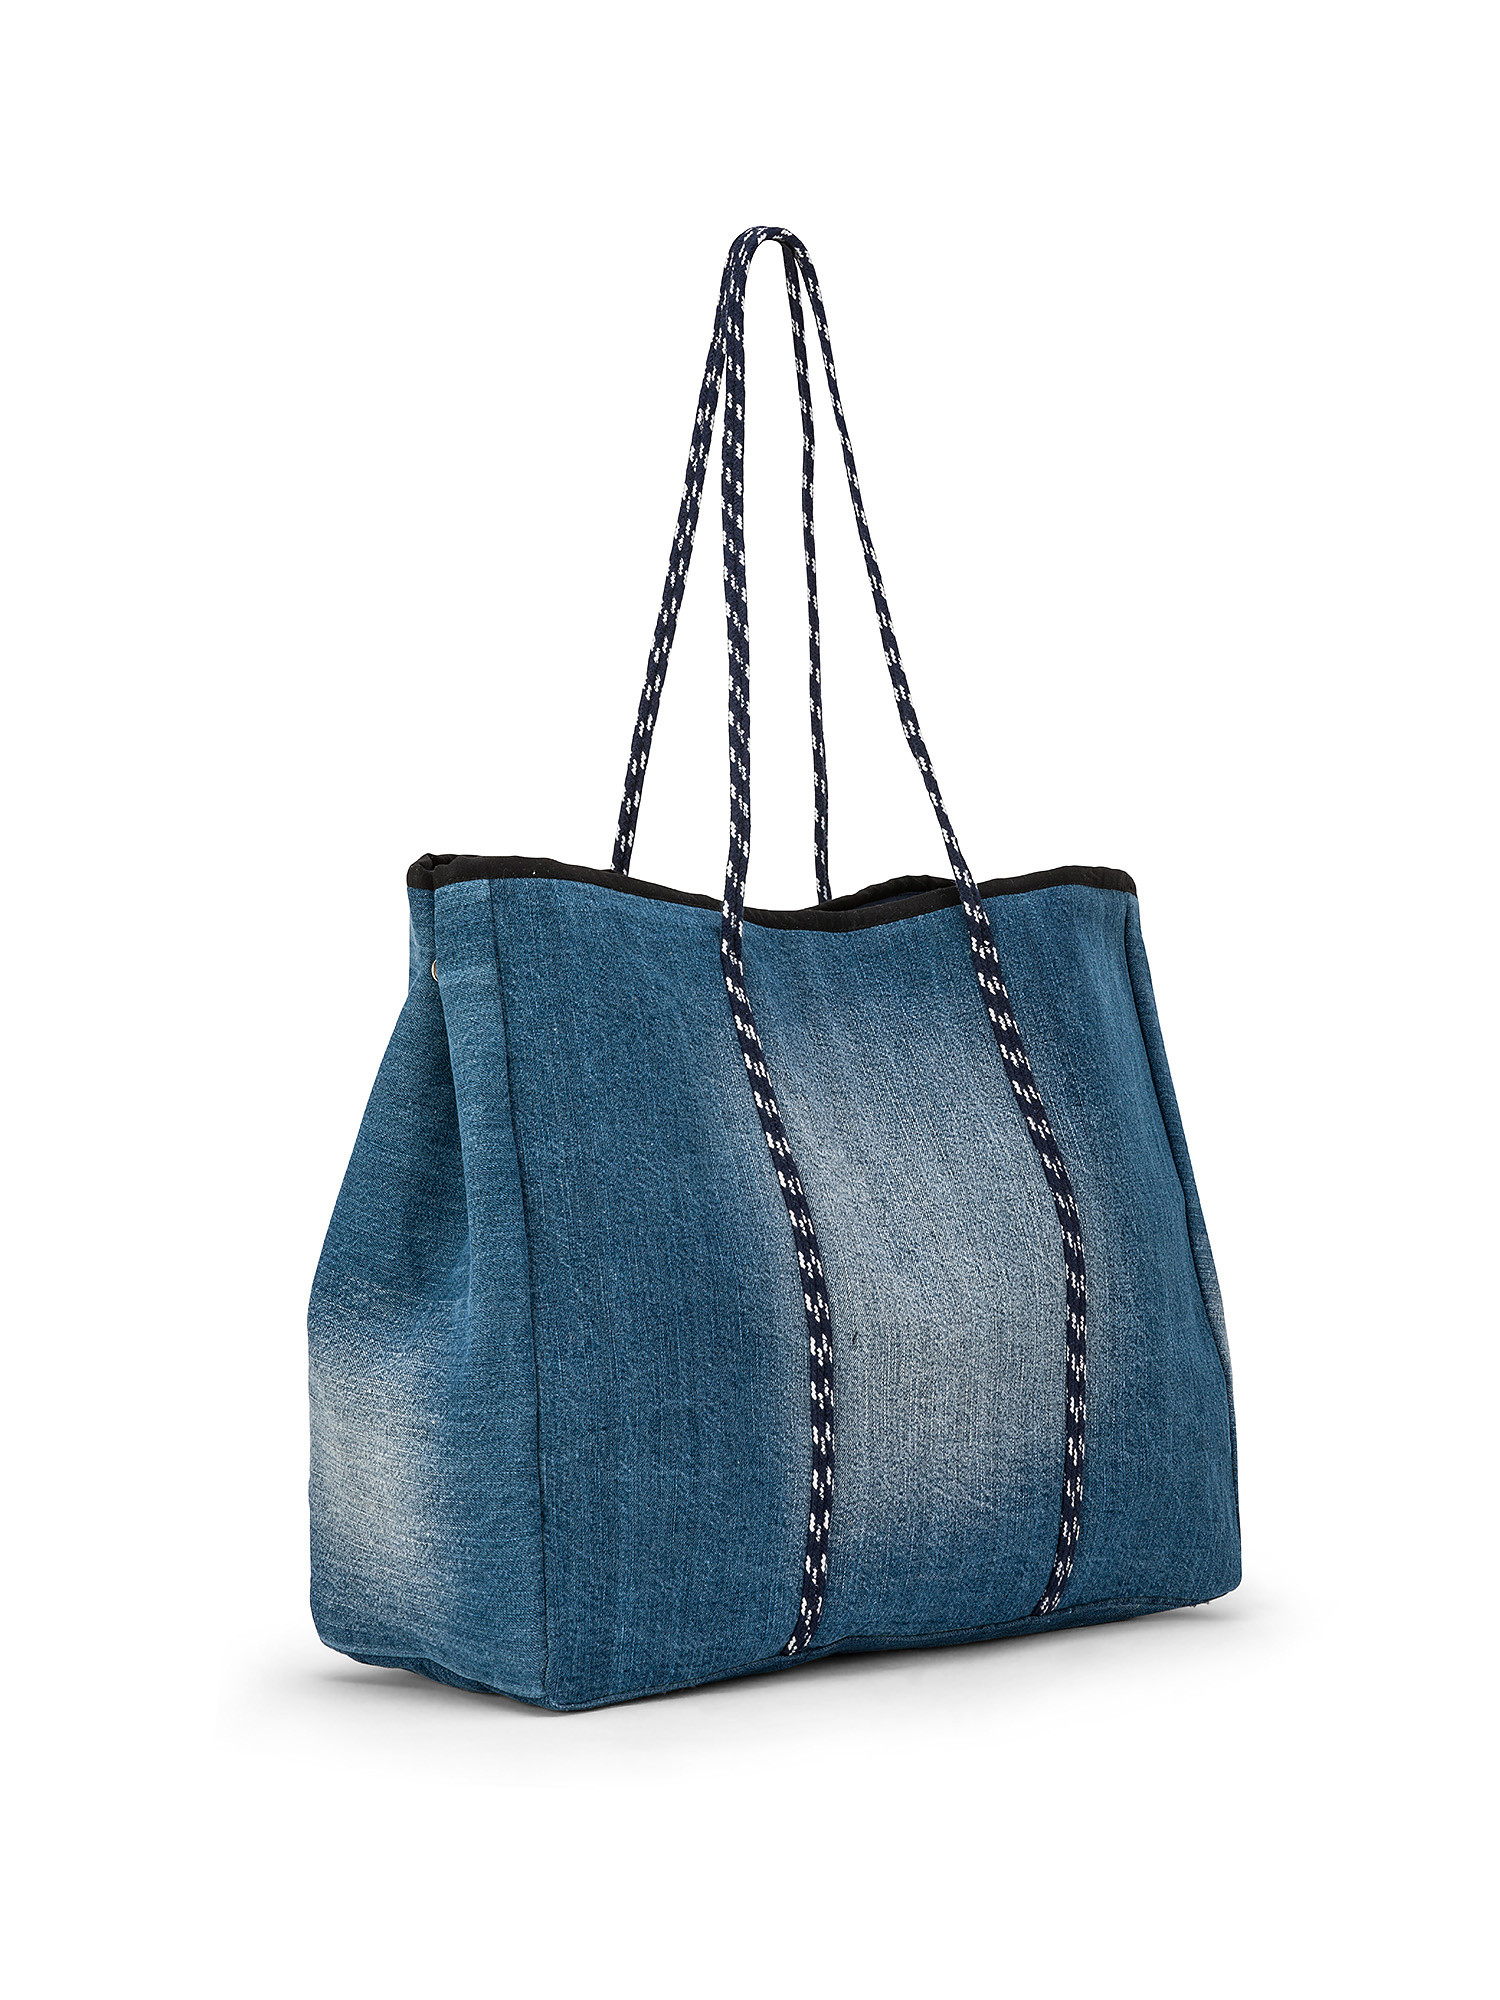 Shopping bag denim di cotone, Azzurro, large image number 1